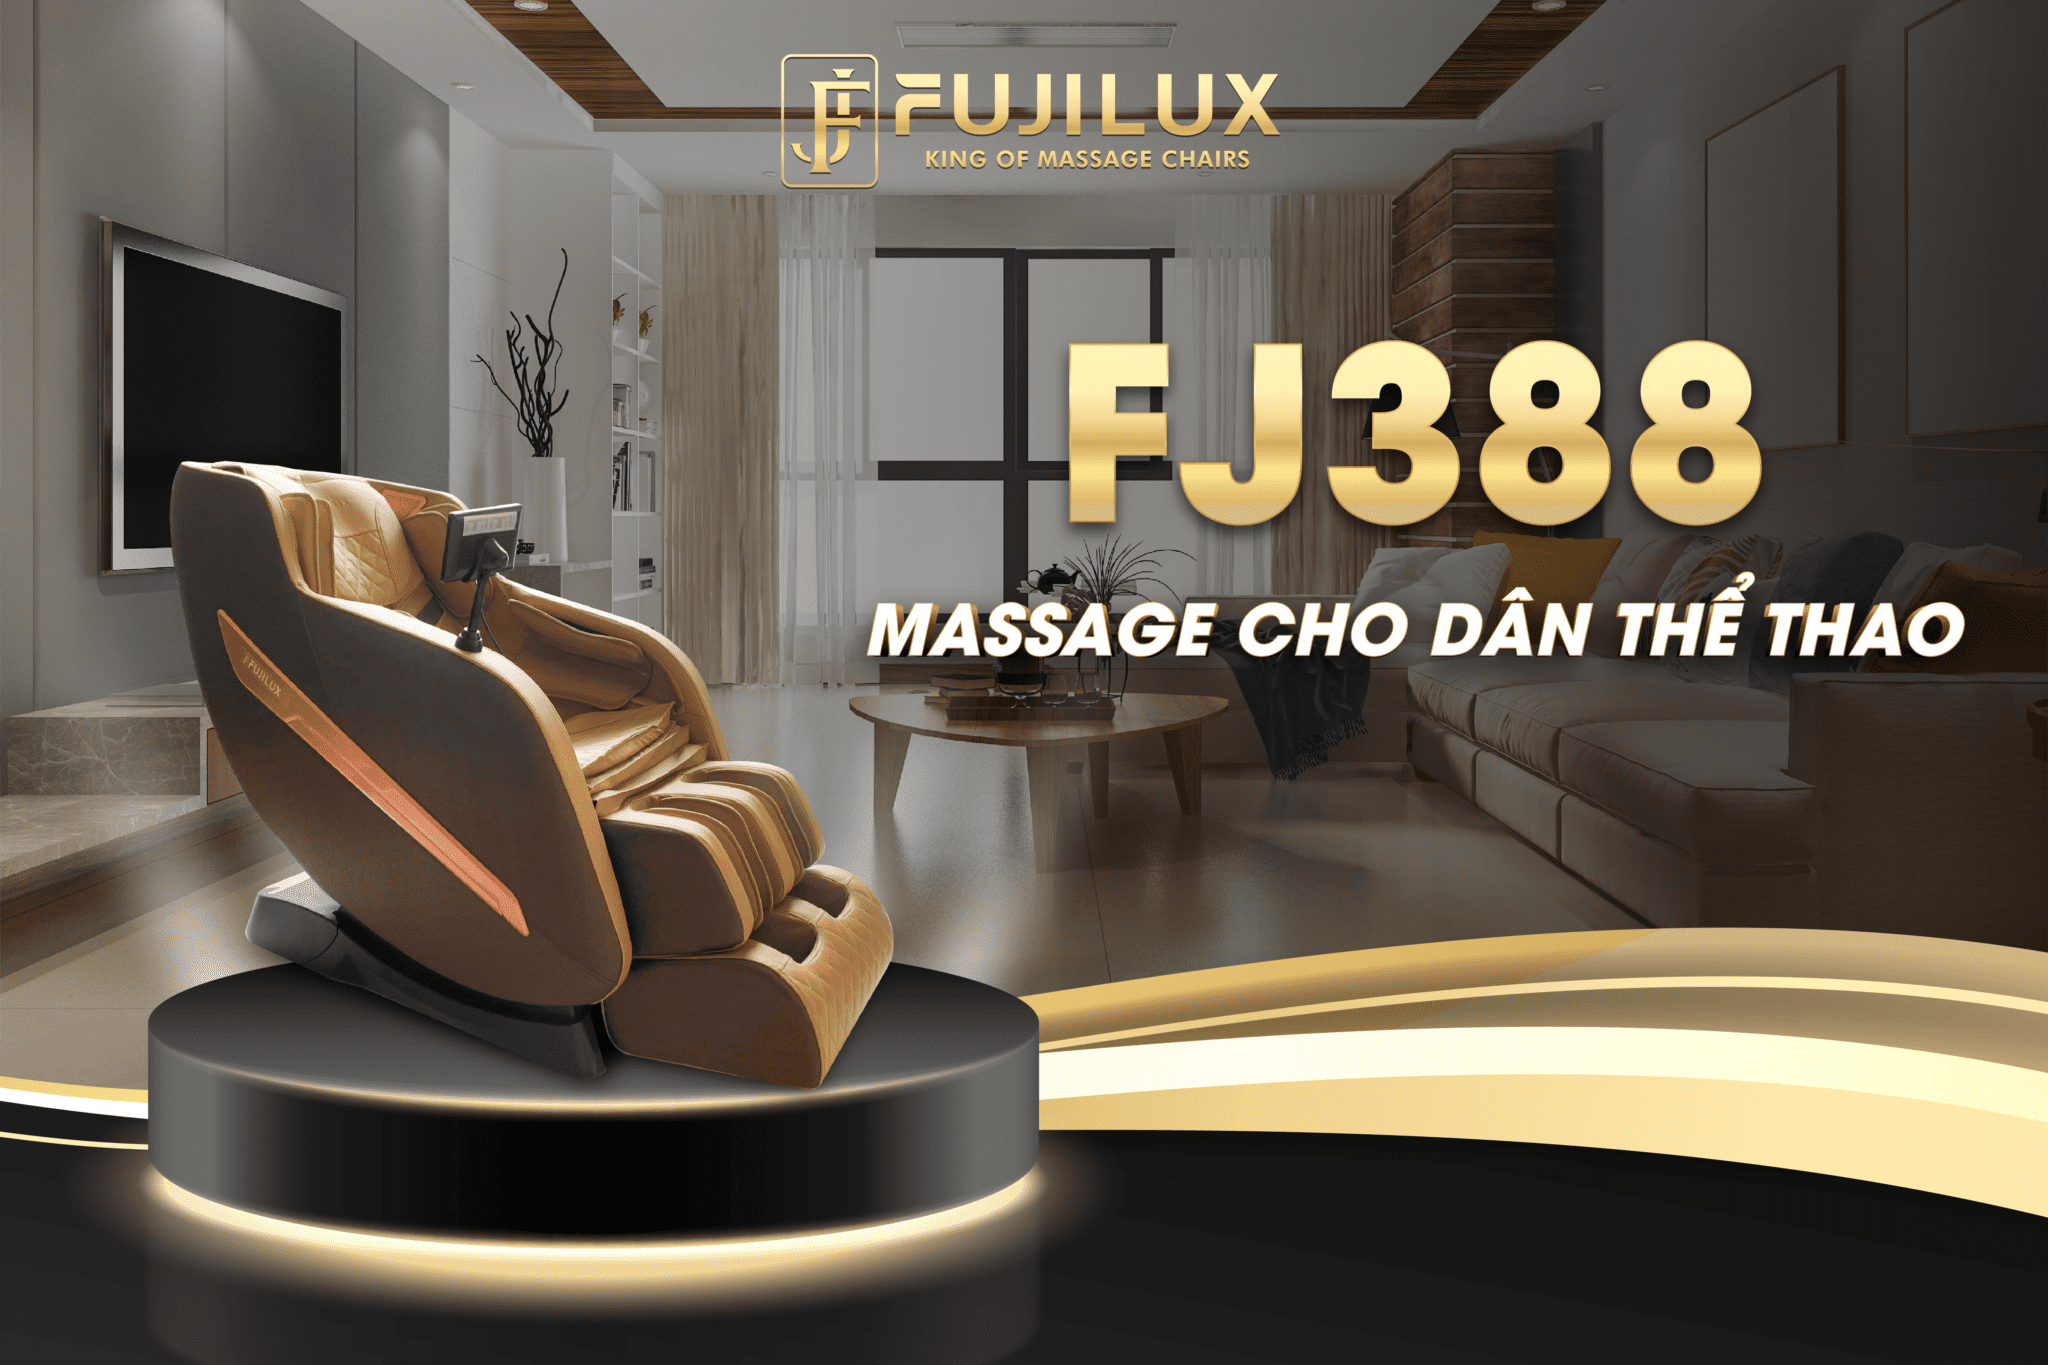 FJ388 - Ghế massage cho dân thể thao 